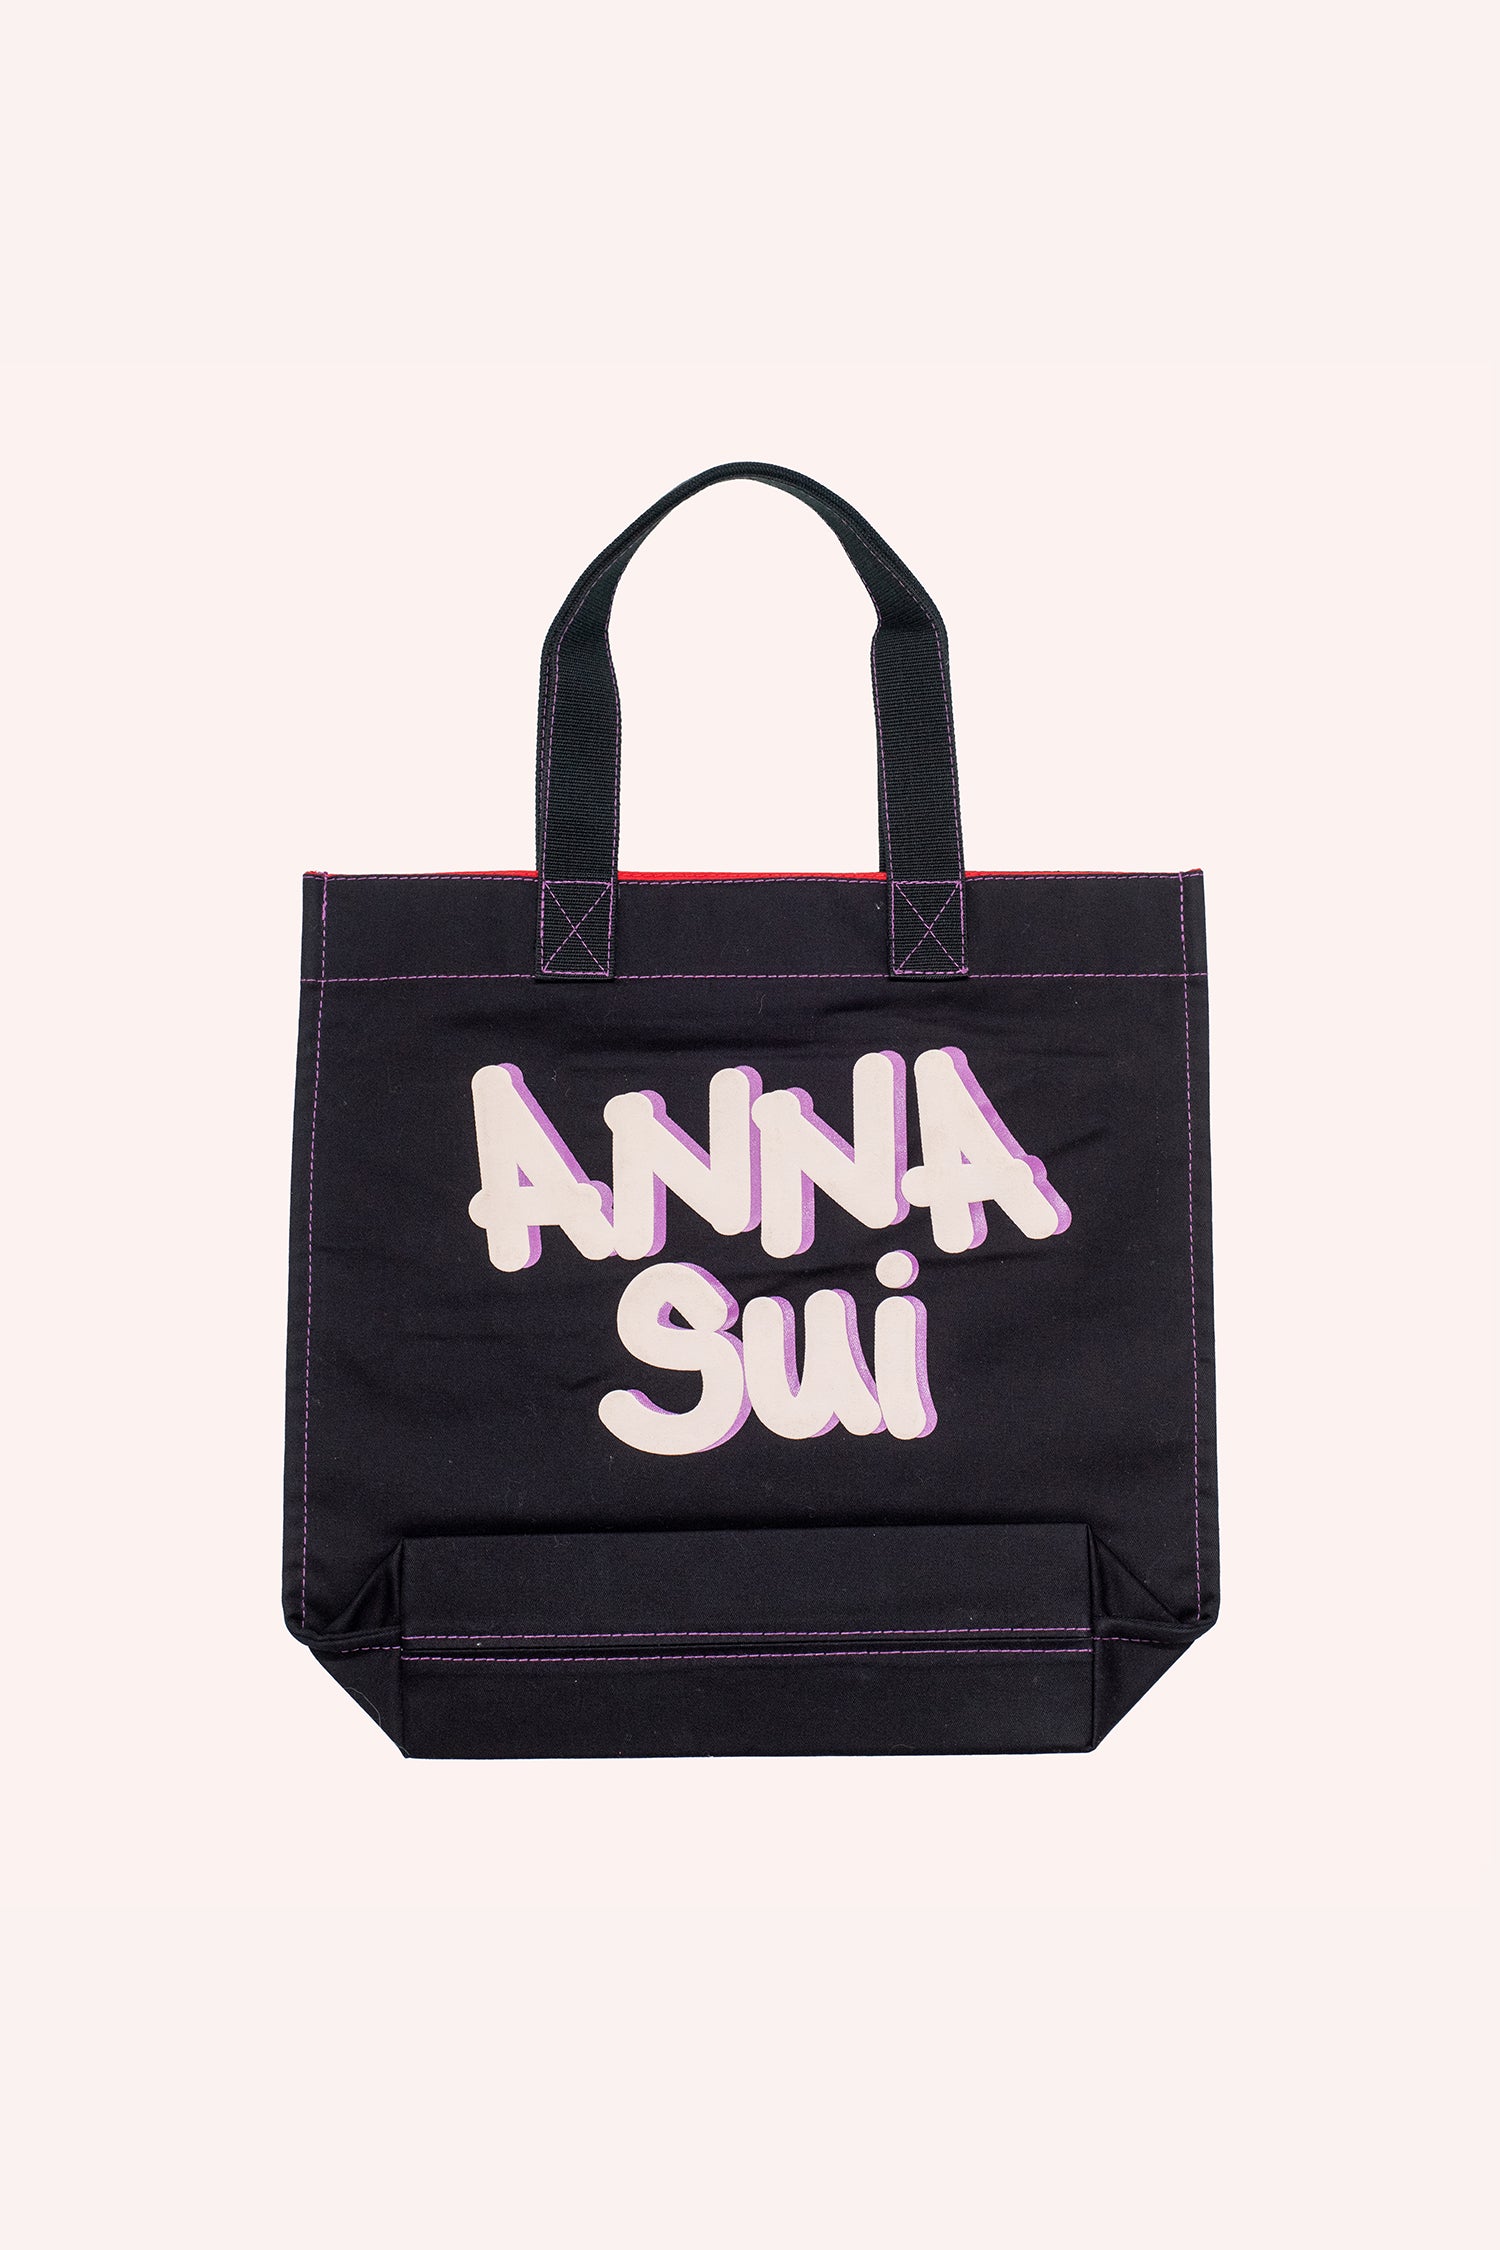 Sac fourre-tout, forme carrée noire, marque Anna Sui sur l'autre face en gros caractères.